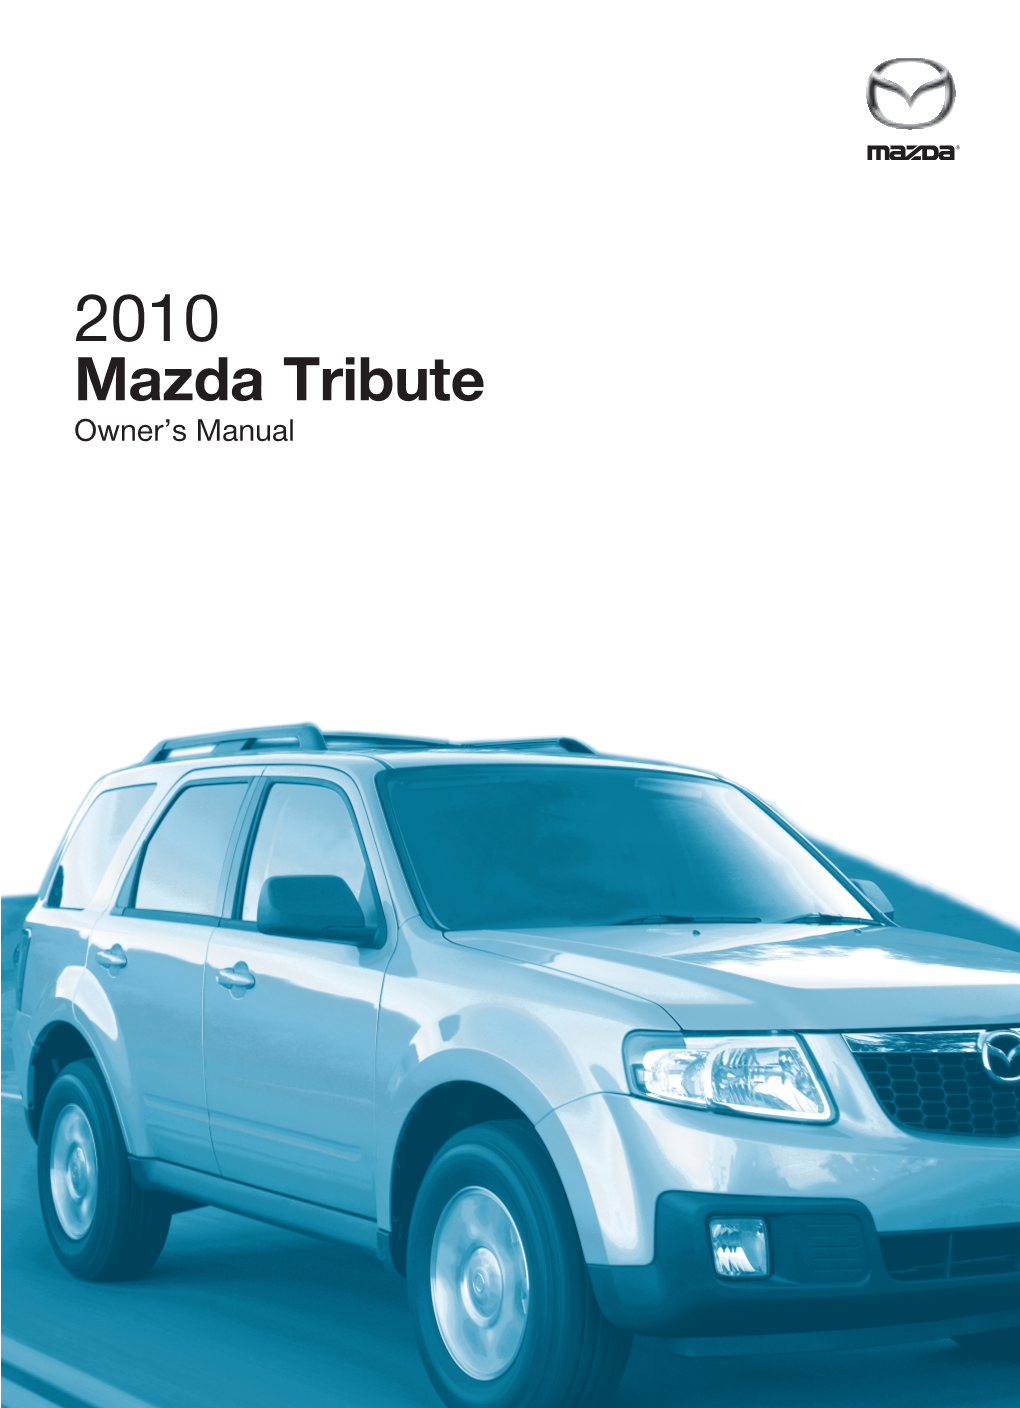 Mazda Tributemazda Owner’S Manual 2010